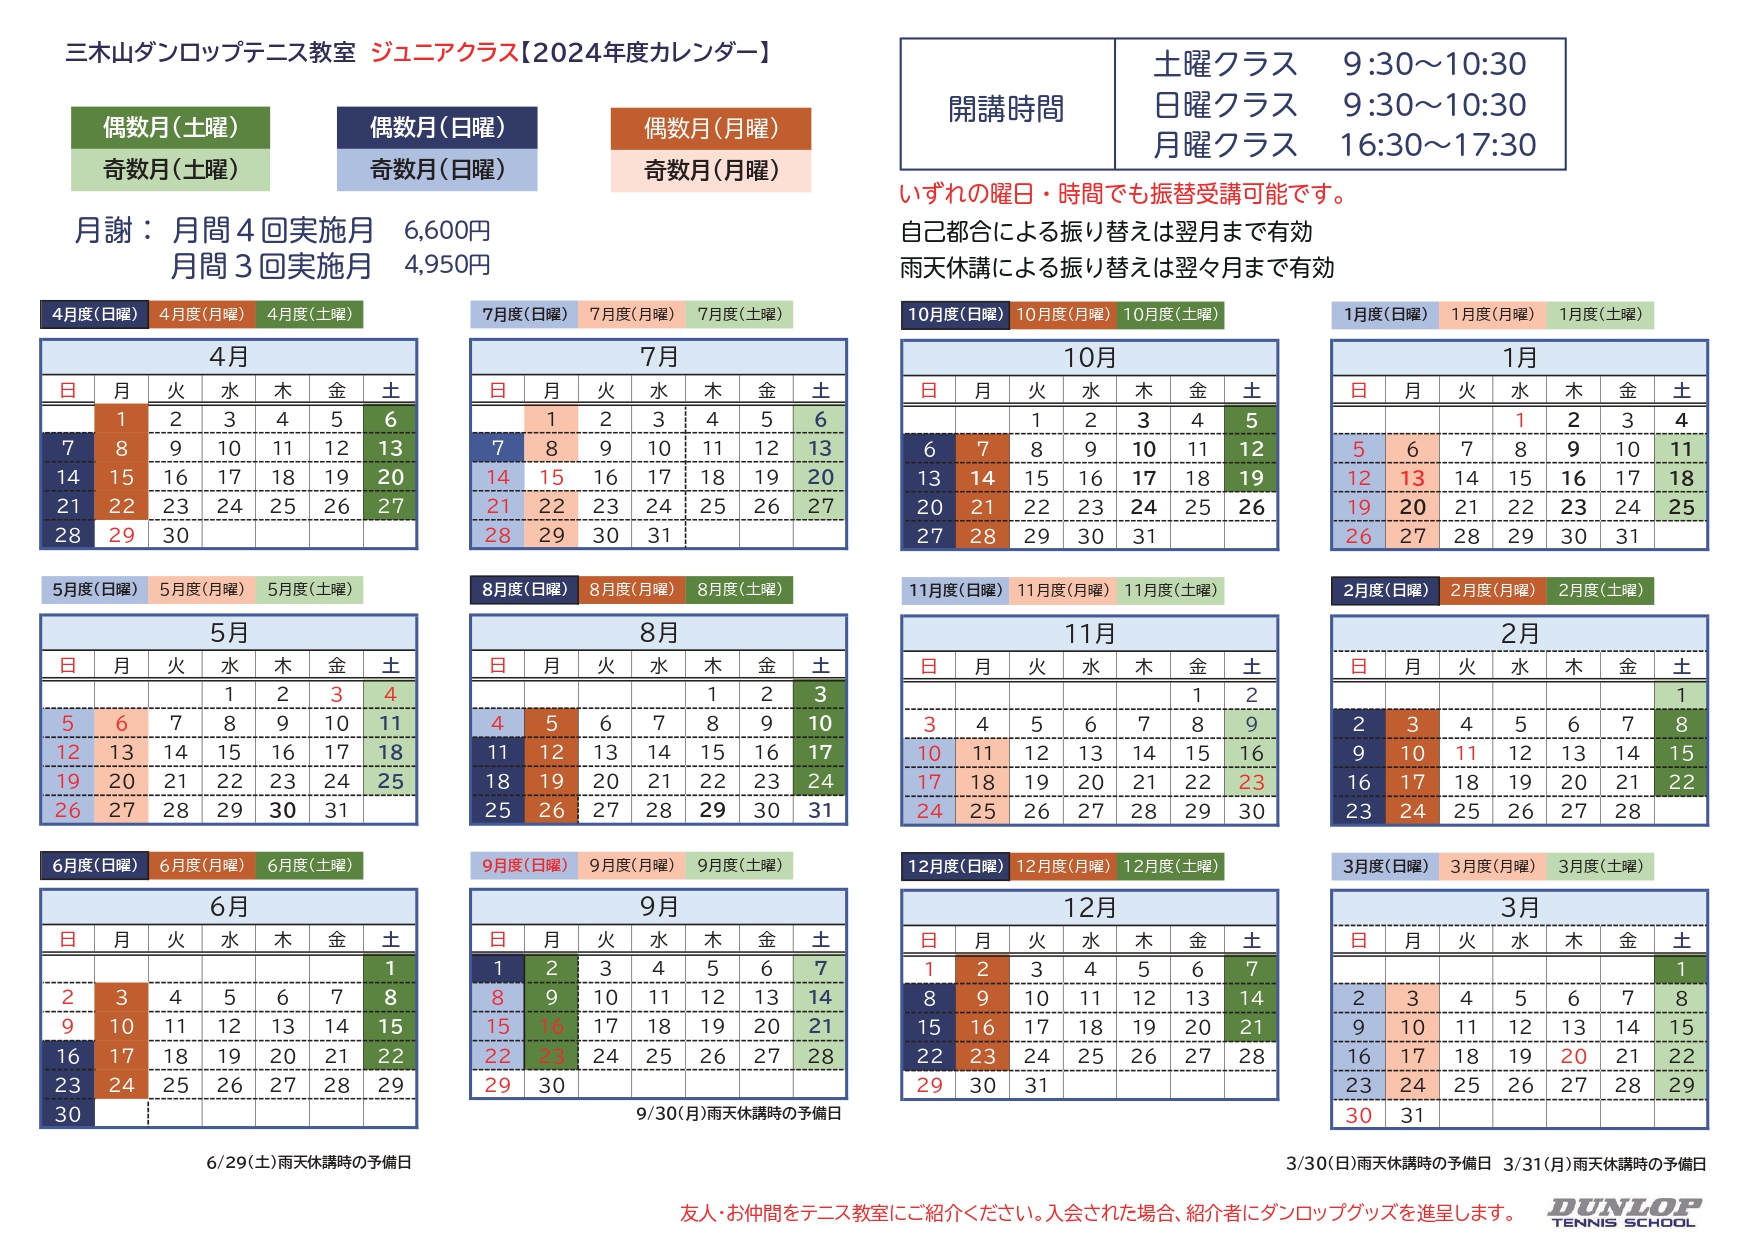 ダンロップテニススクール三木山 ジュニア 日程表